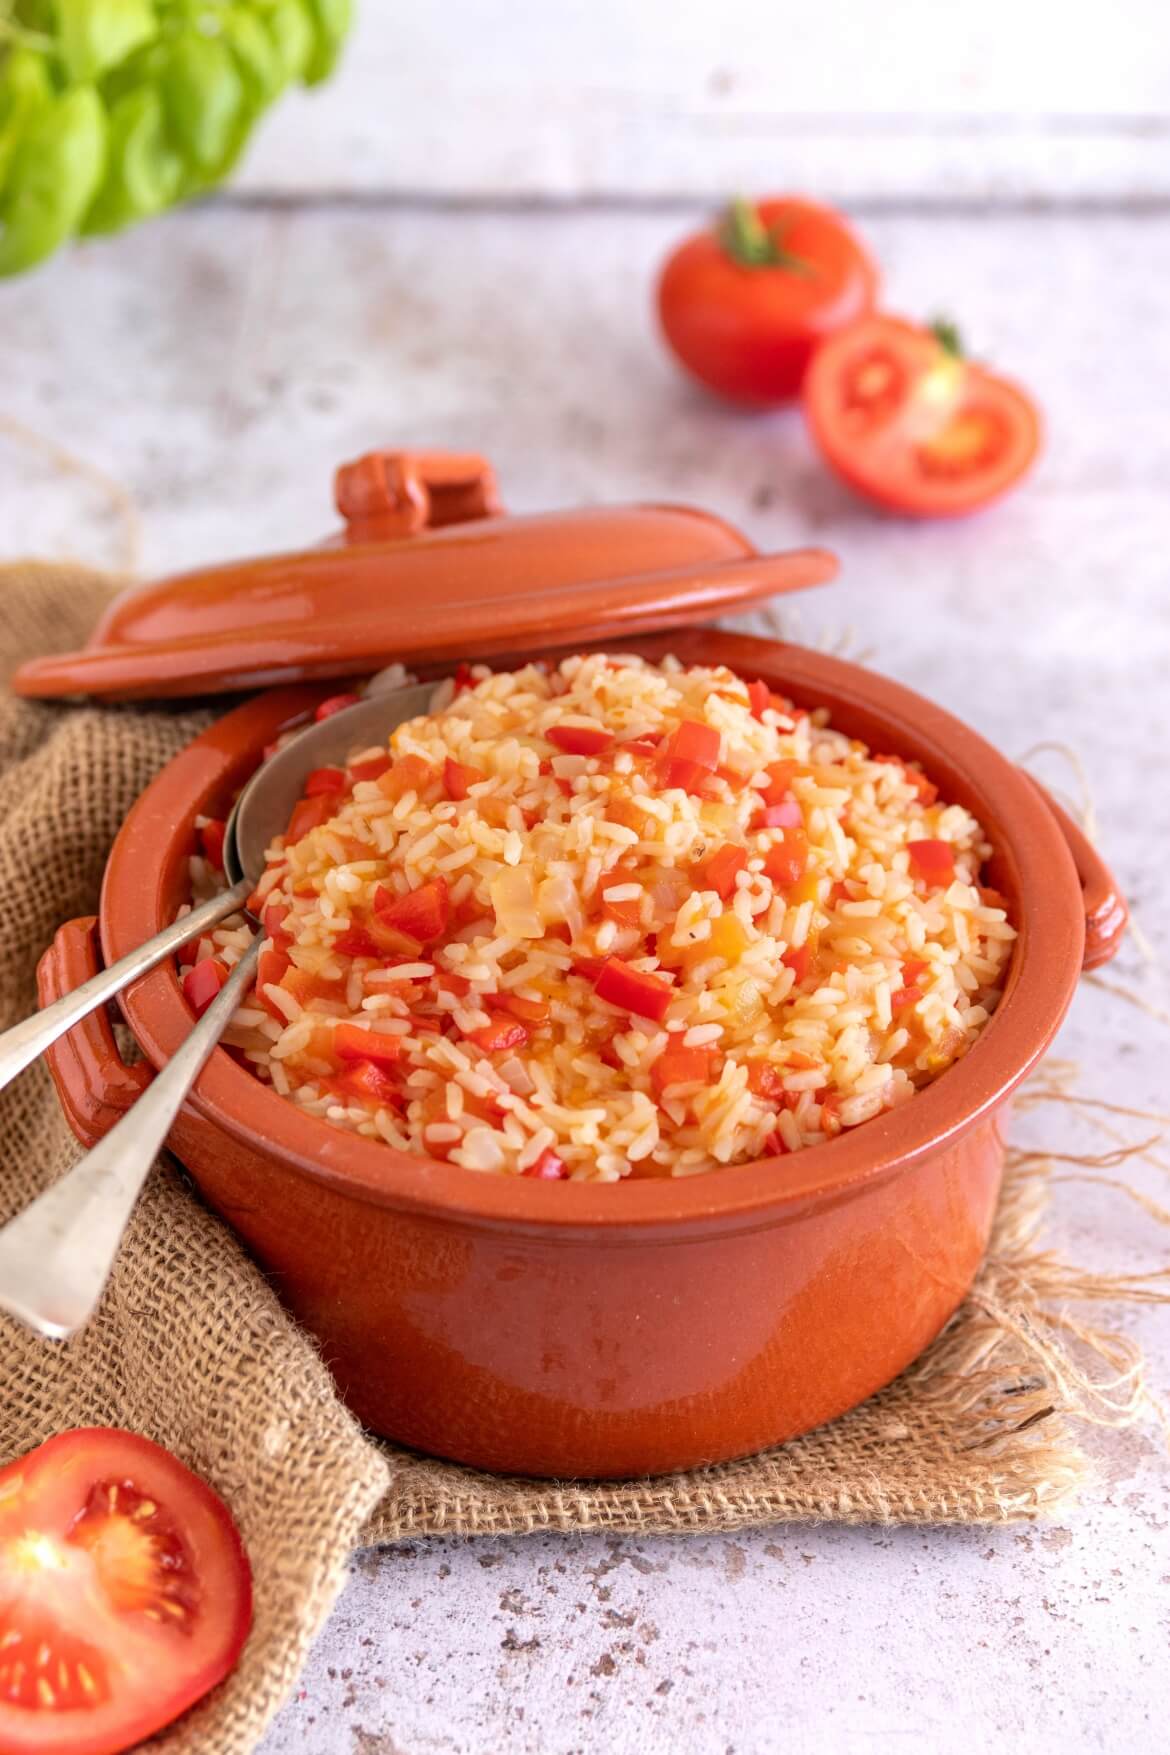 Tacho de barro com arroz de tomate